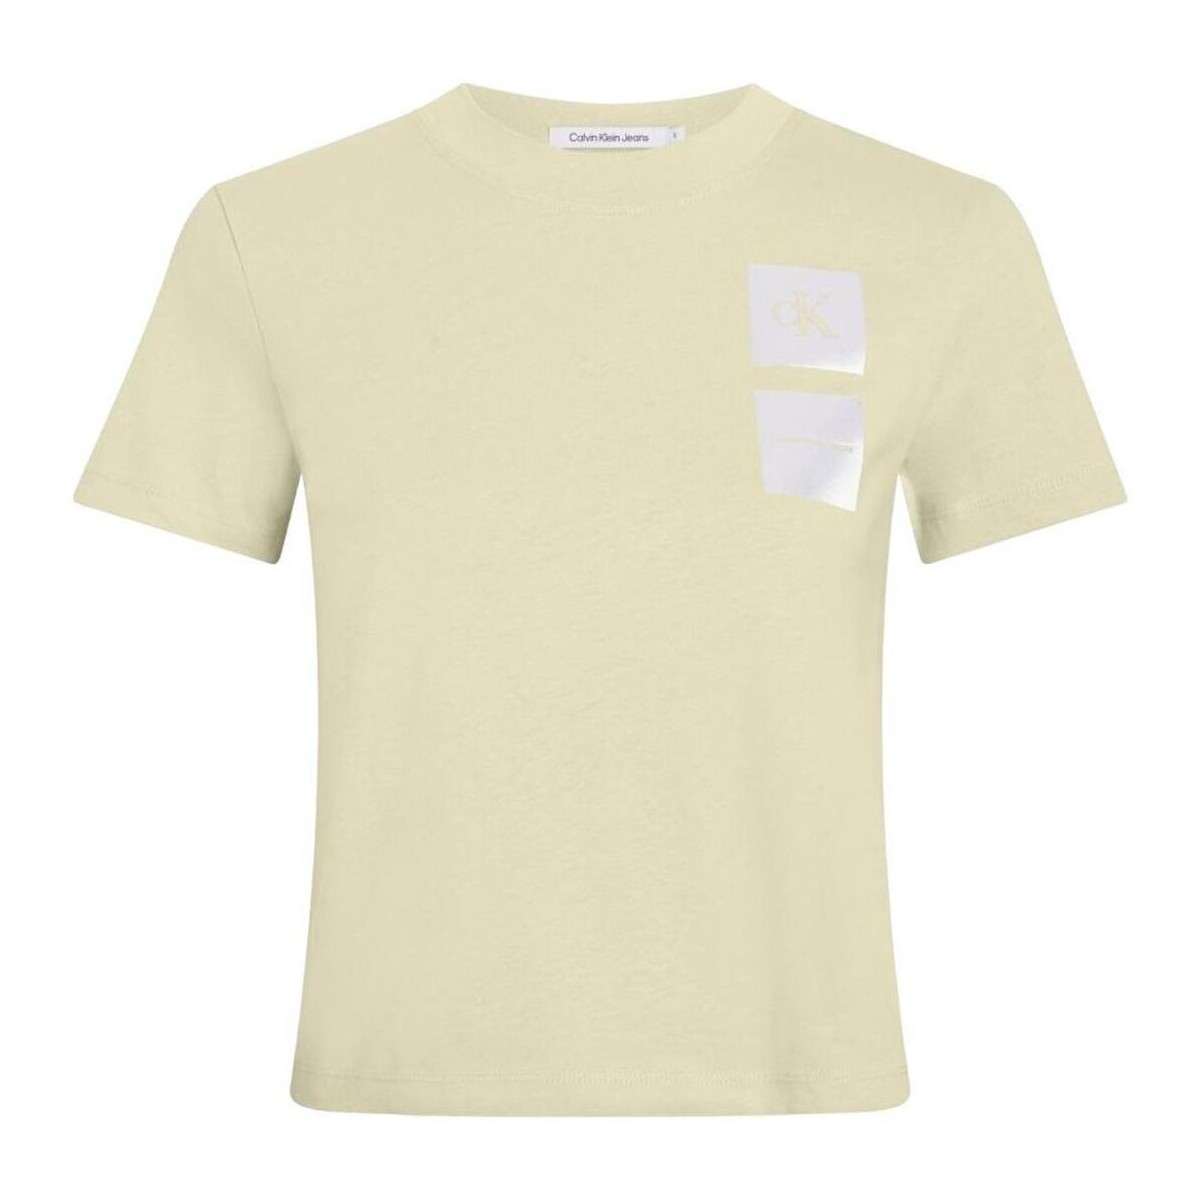 tekstylia Damskie T-shirty z krótkim rękawem Calvin Klein Jeans  Zielony